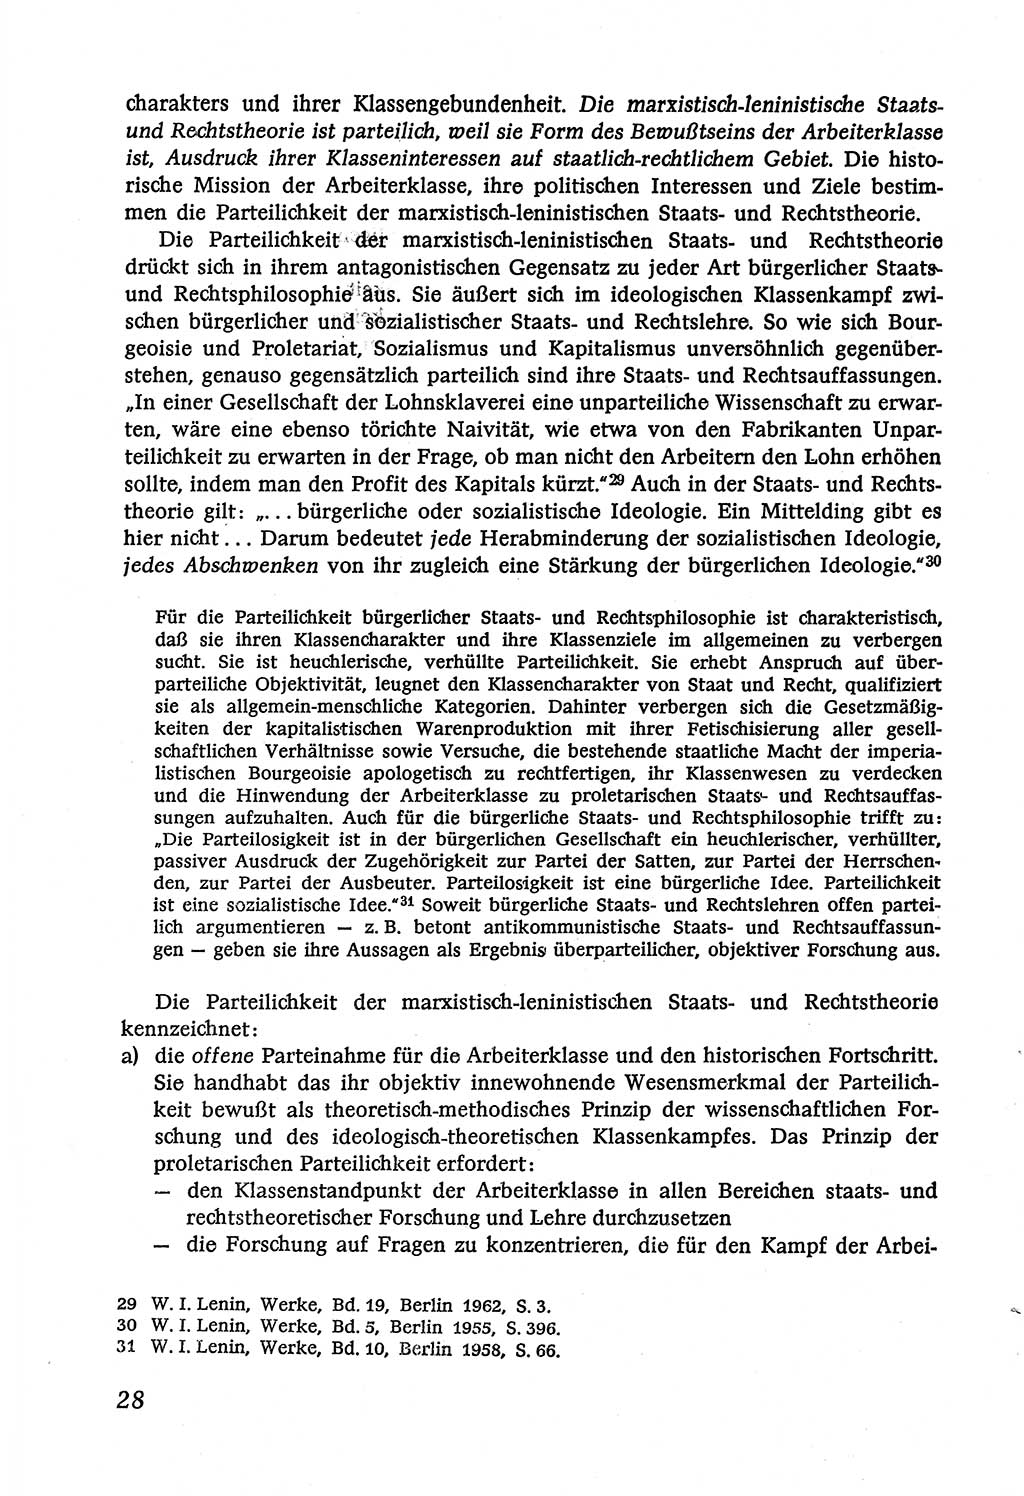 Marxistisch-leninistische (ML) Staats- und Rechtstheorie [Deutsche Demokratische Republik (DDR)], Lehrbuch 1980, Seite 28 (ML St.-R.-Th. DDR Lb. 1980, S. 28)